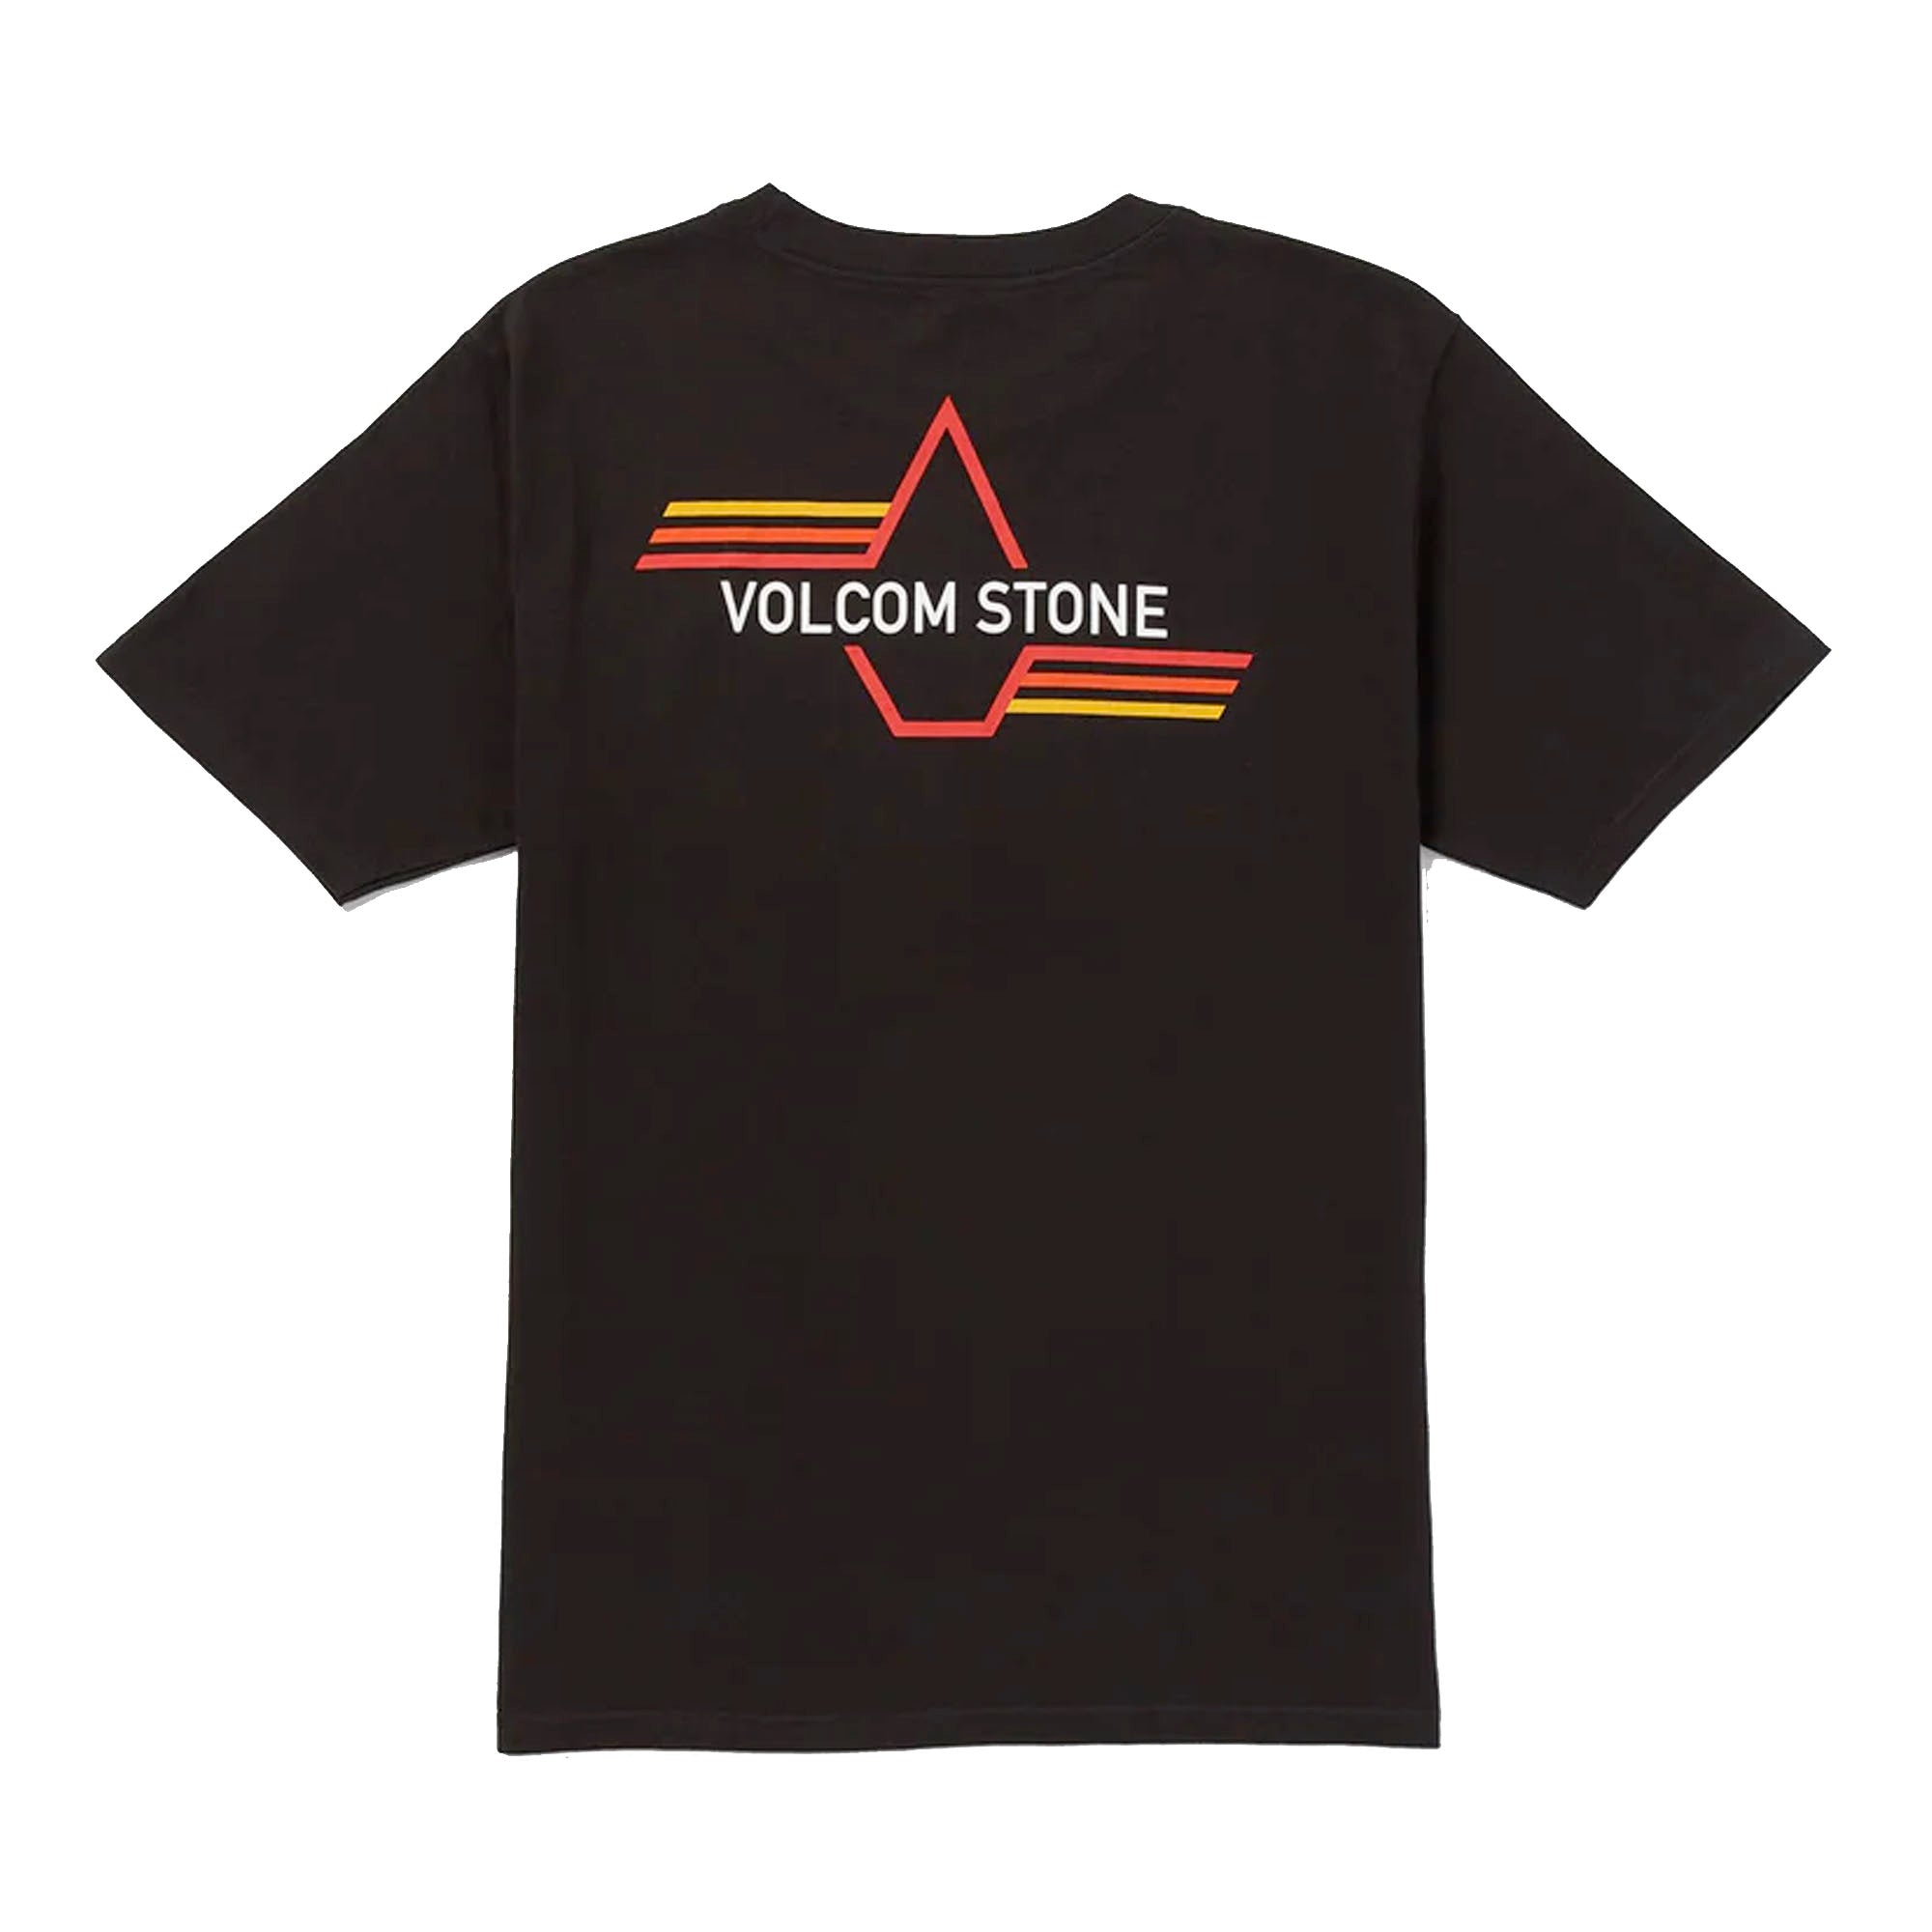 Volcom Stone Tanker Men's S/S T-Shirt